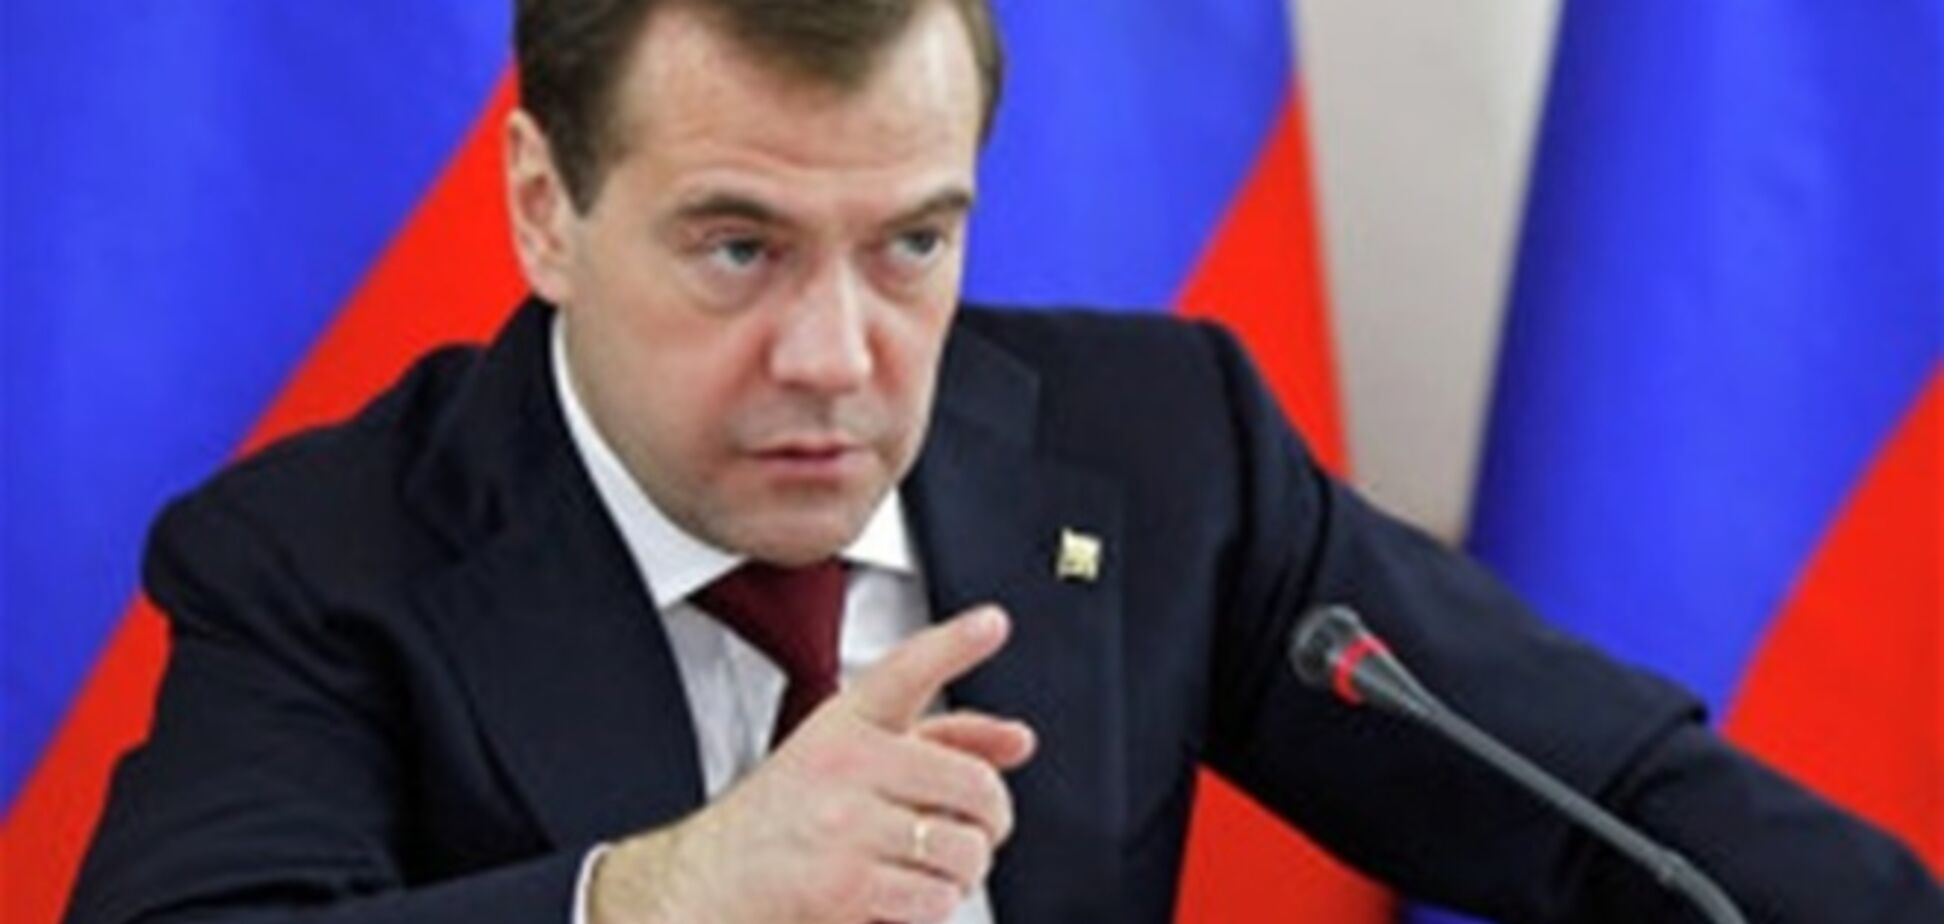 Медведев требует от Украины оплату за газ для 'ДНР/ЛНР', иначе 'придется принимать сложное решение'